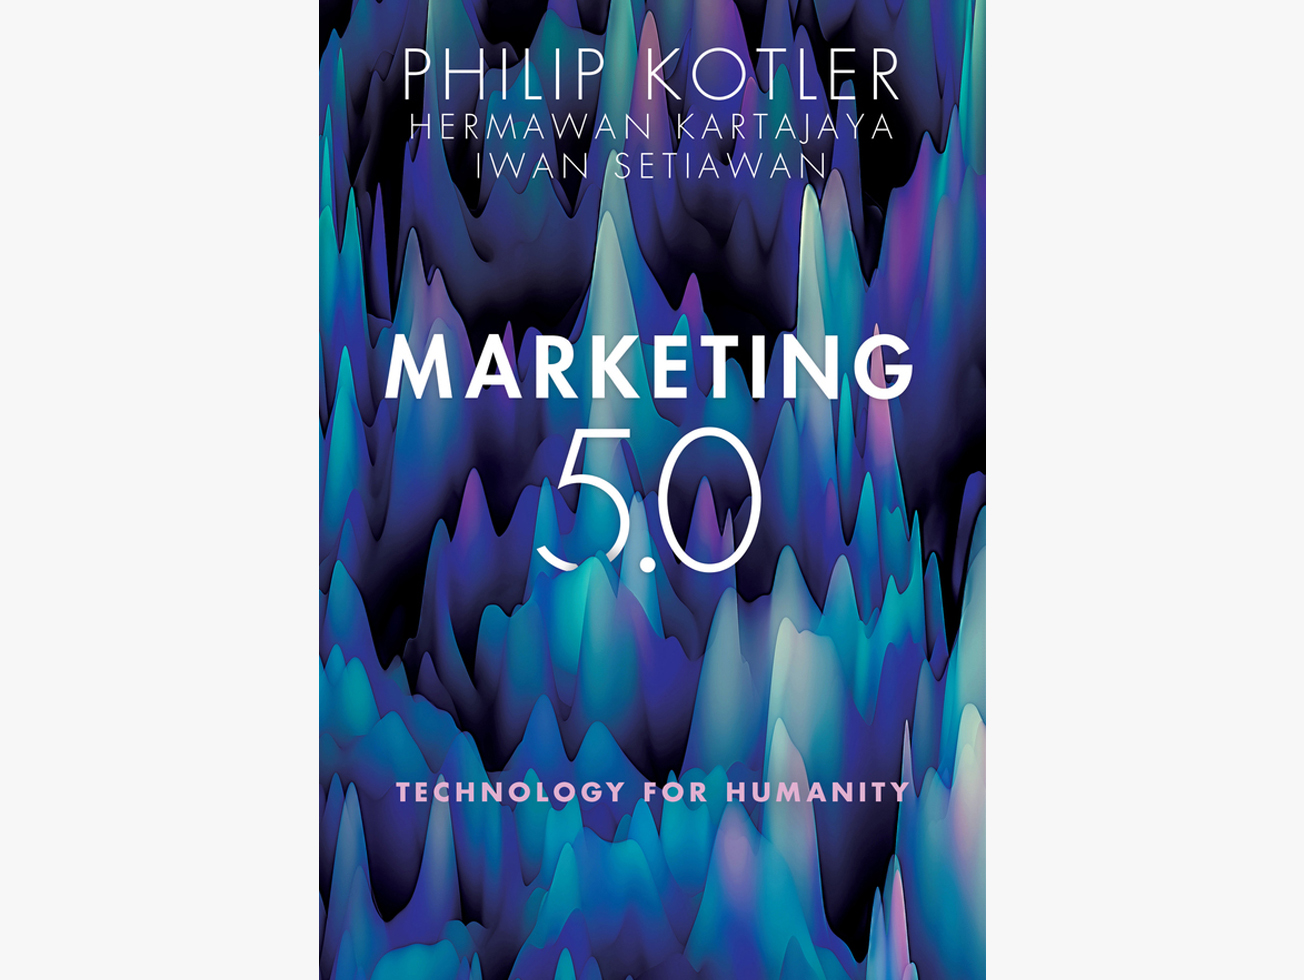 สรุปหนังสือ Marketing 5.0 ของศาสตราจารย์ Philip Kotler เล่มล่าสุด